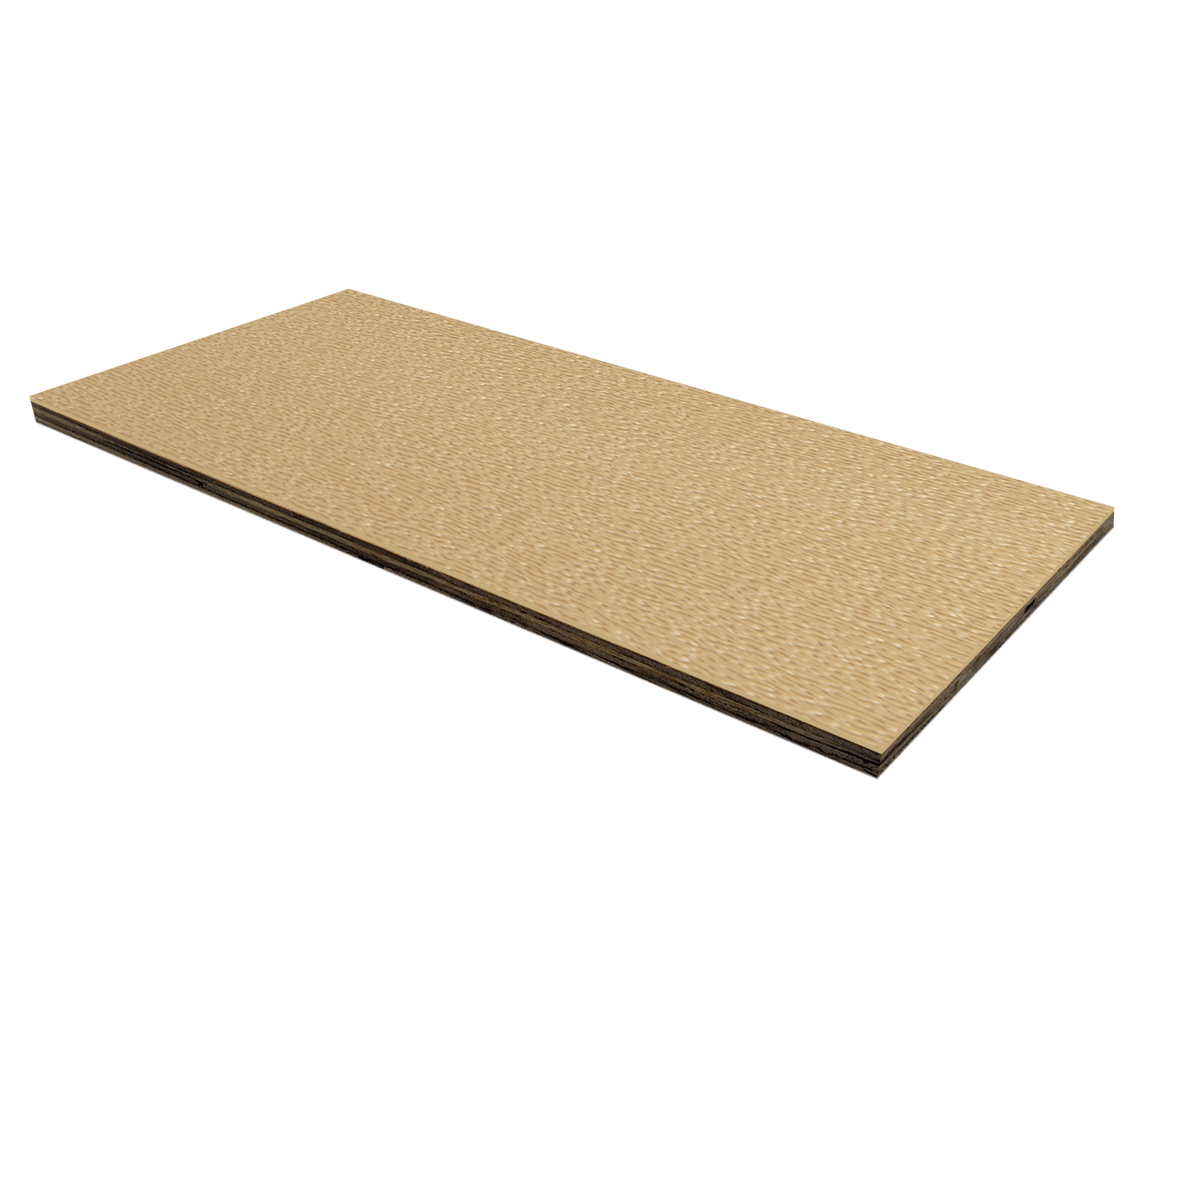 1/4" Birch Plywood Laminate - Desert Tan